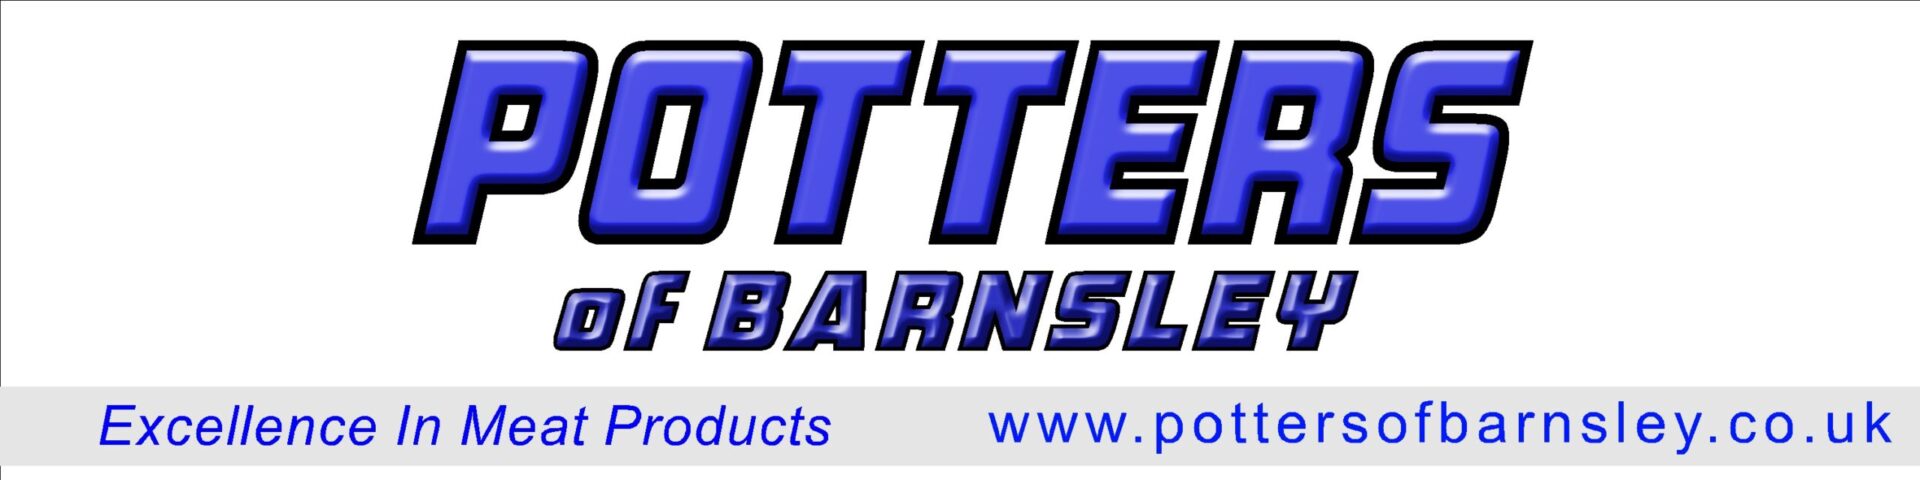 Potters of Barnsley Ltd